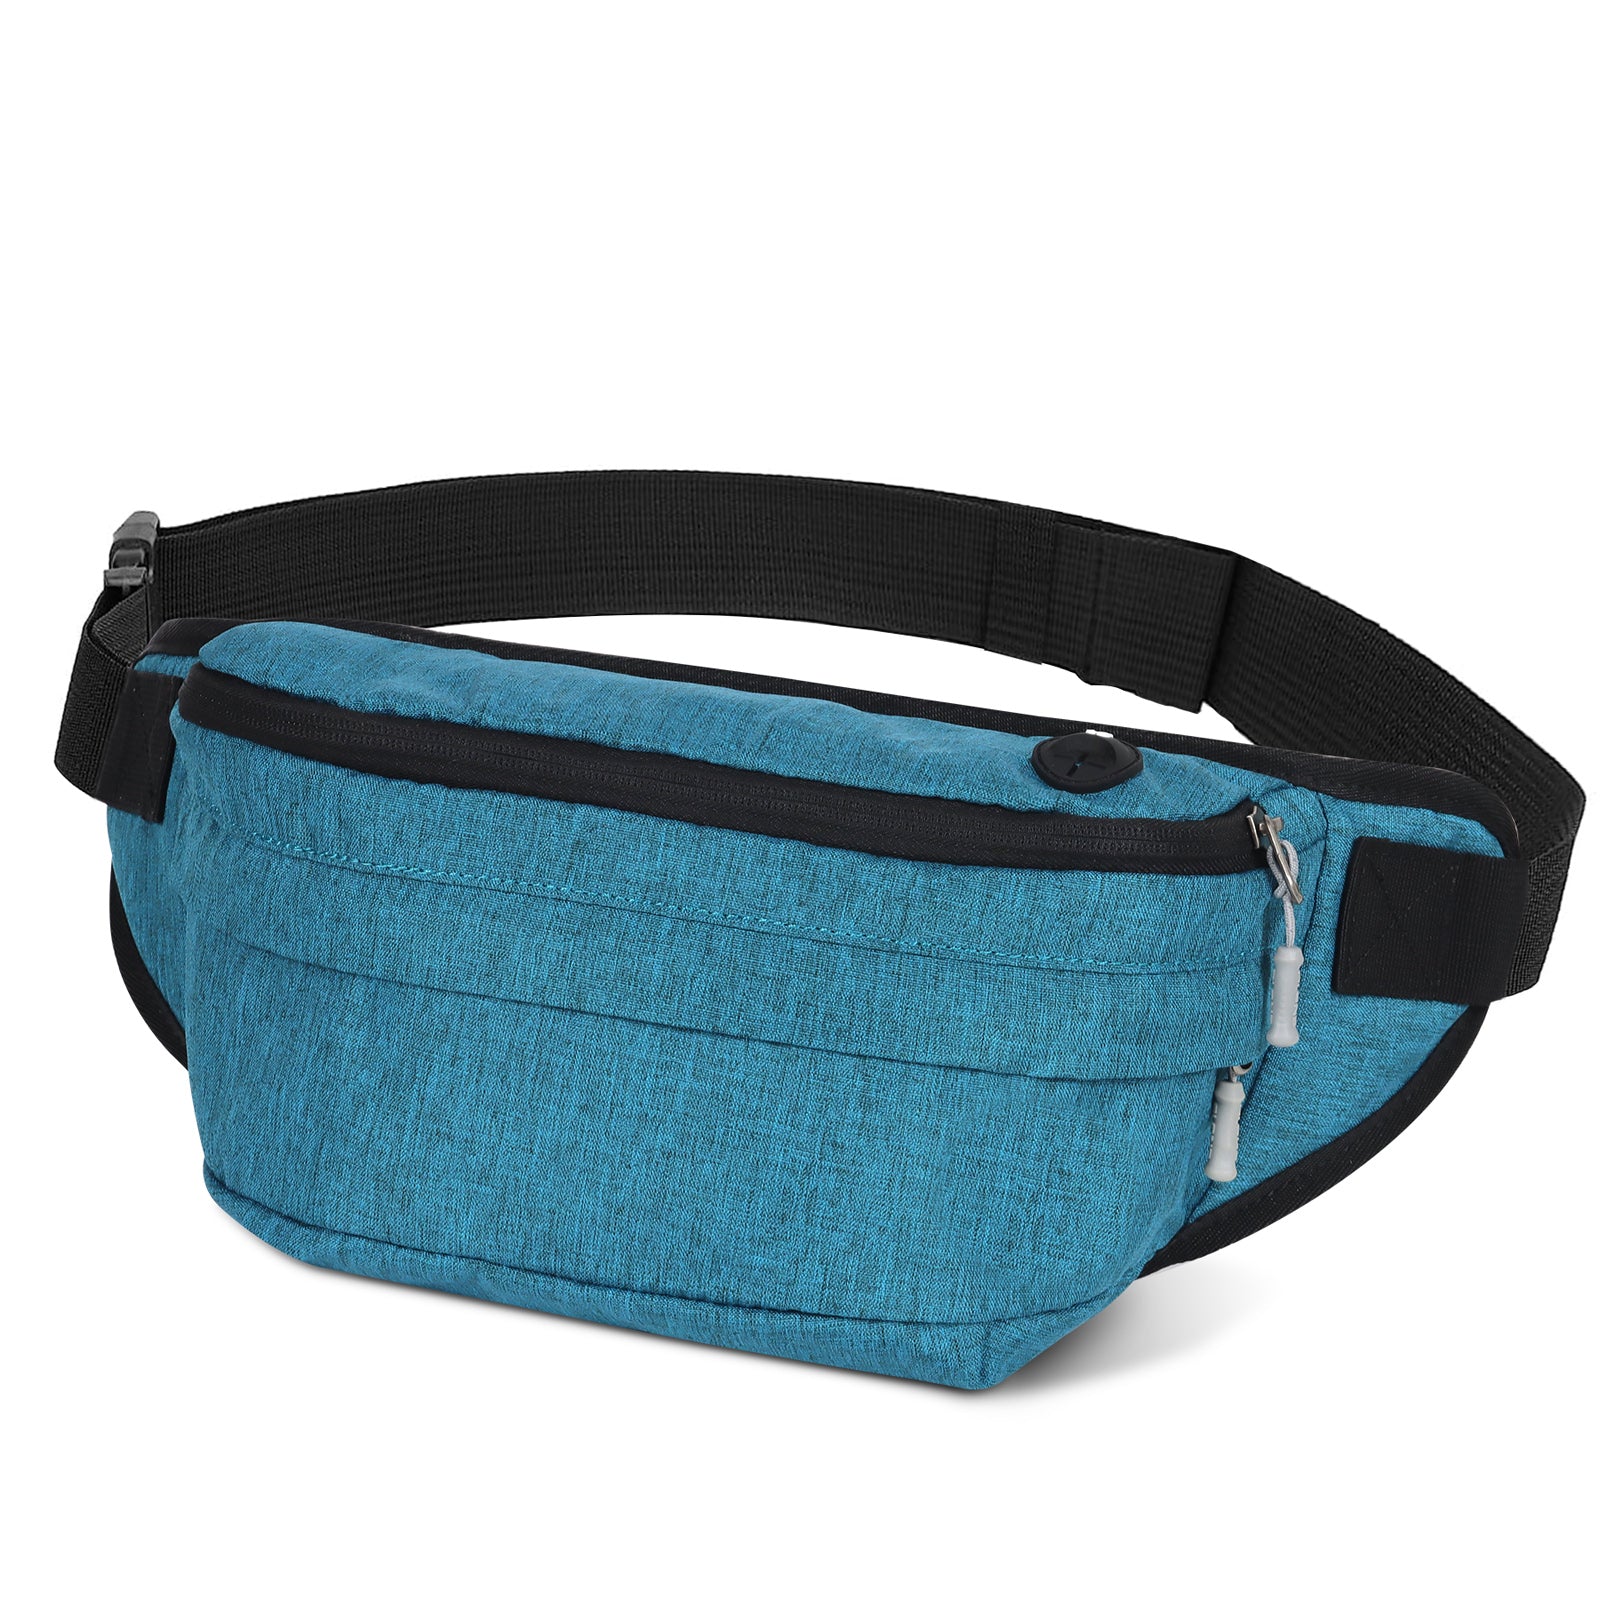 TAN.TOMI Sport-Hüfttasche, verstellbarer Hüftgurt, ideal für Outdoor-Aktivitäten wie Laufen und Ausflüge.